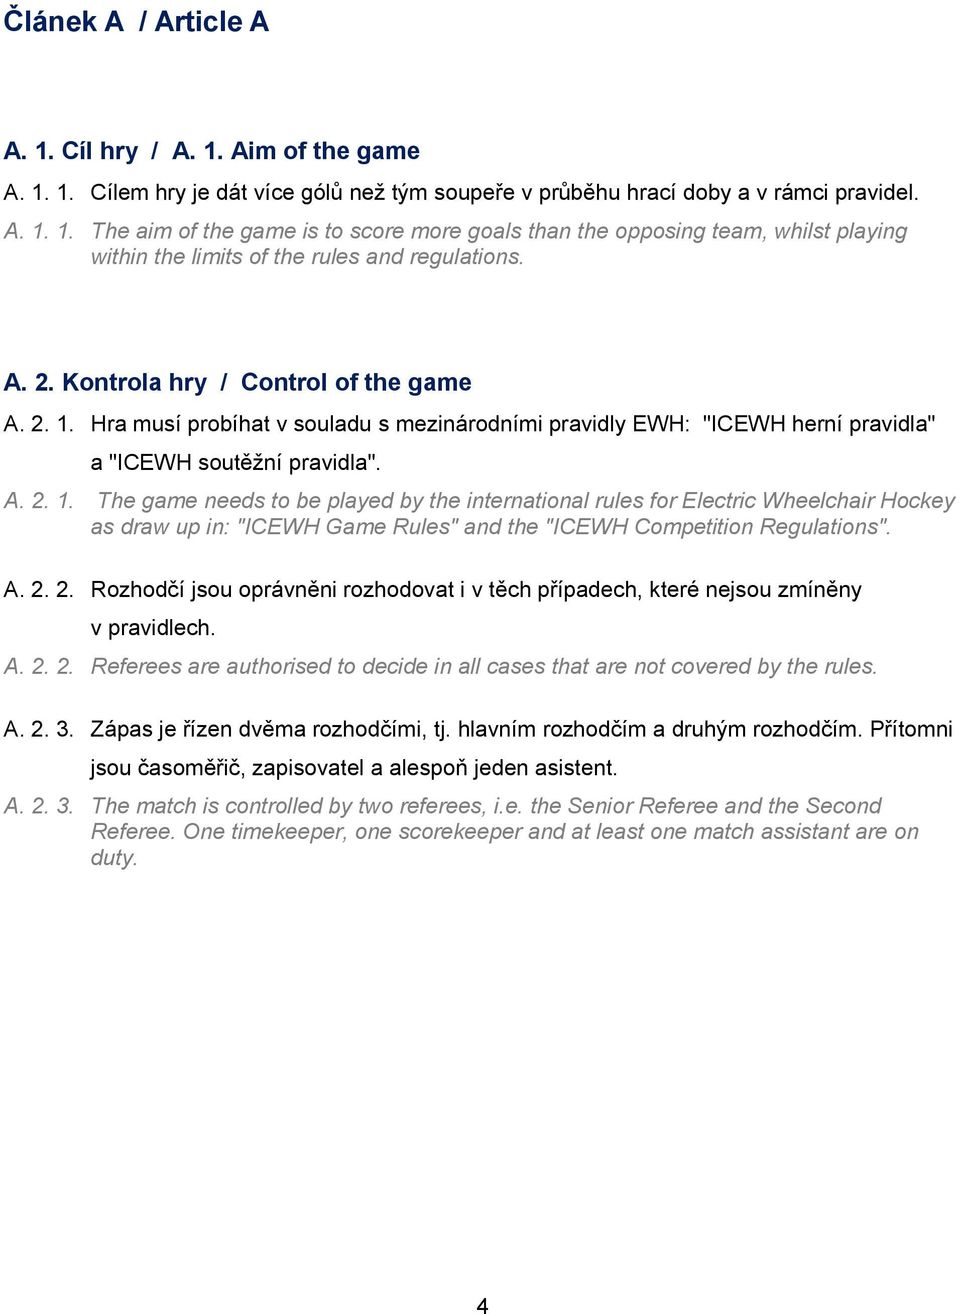 Hra musí probíhat v souladu s mezinárodními pravidly EWH: "ICEWH herní pravidla" a "ICEWH soutěžní pravidla". A. 2. 1.